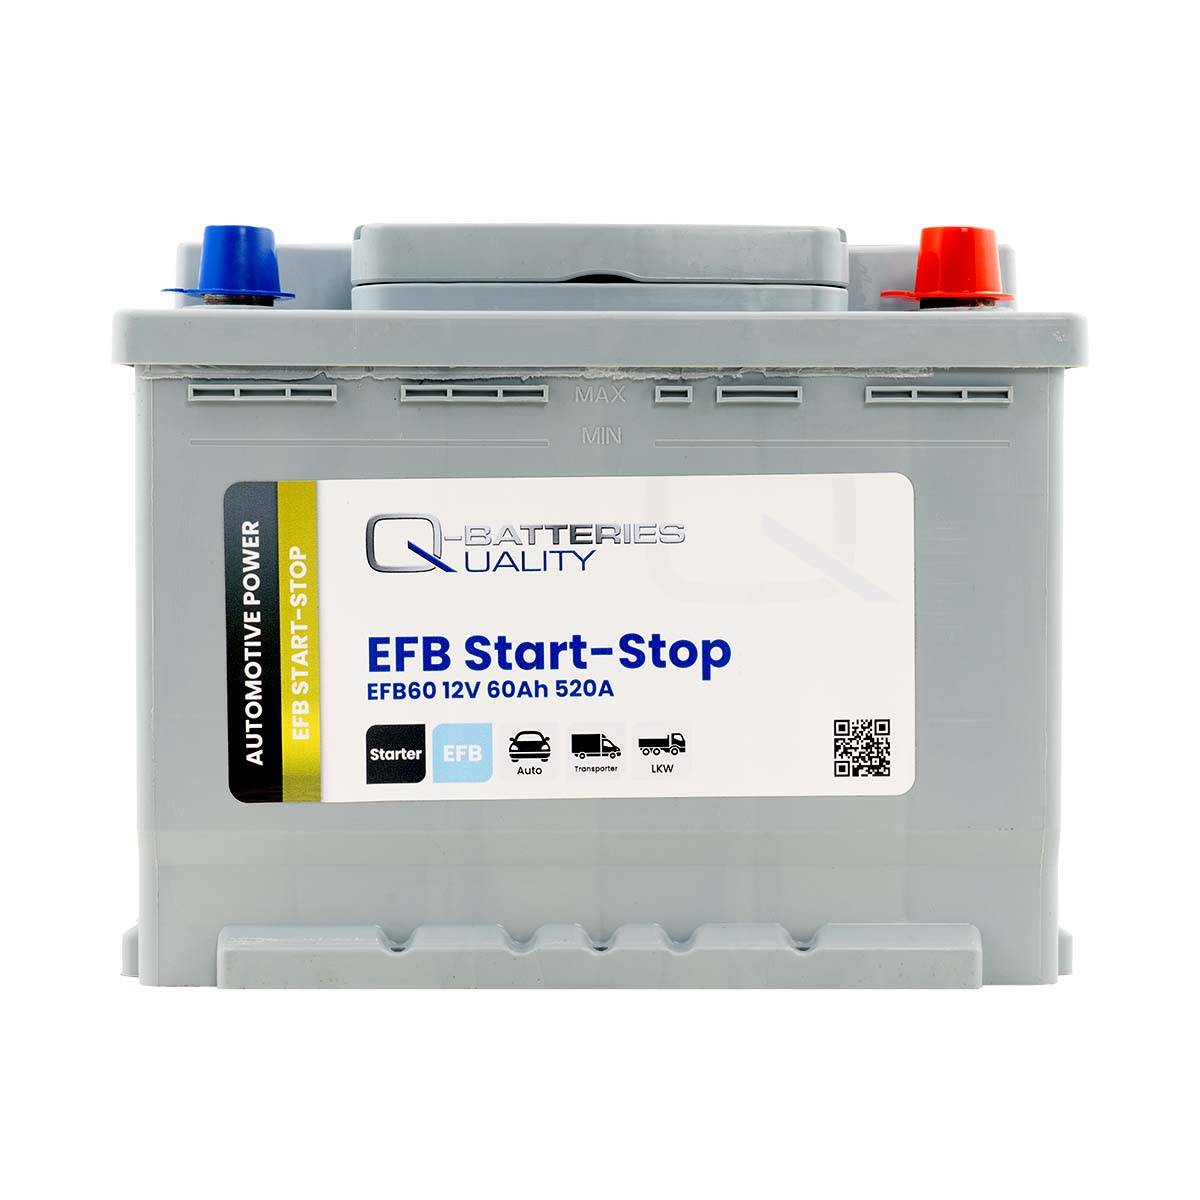 Q-Batteries Start-Stop EFB Autobatterie EFB60 12V 60Ah 520A